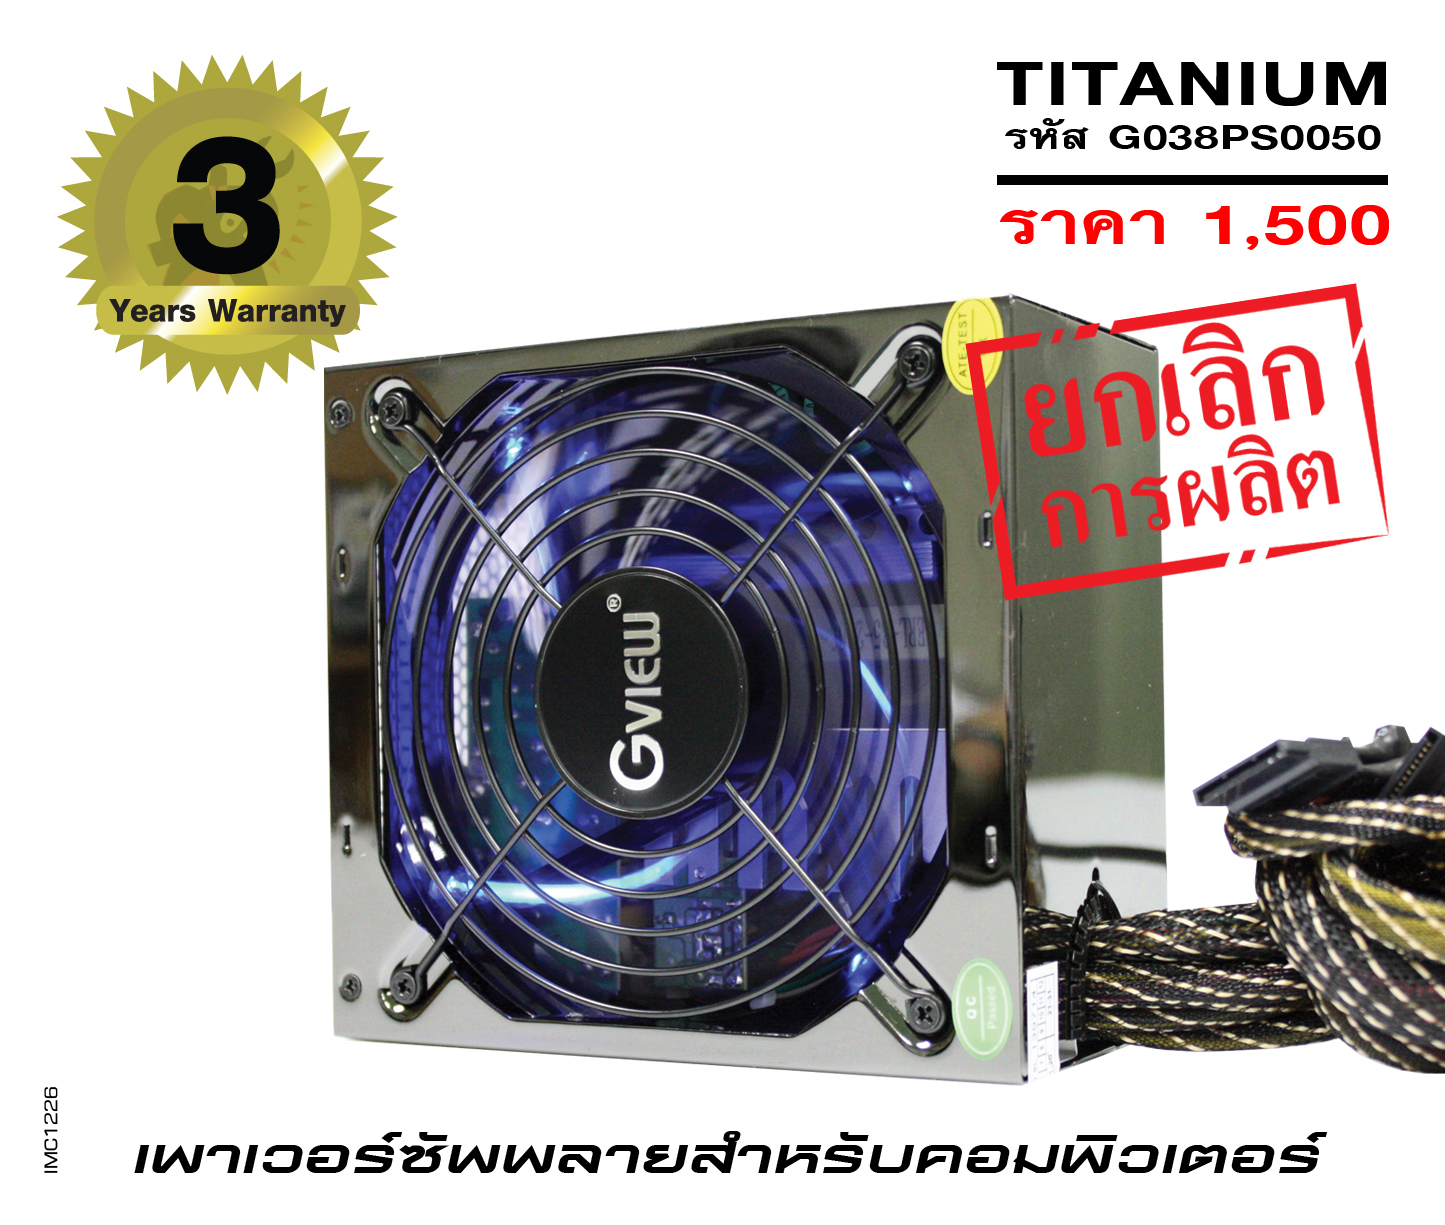 รุ่น TITANIUM 500 (รหัส G038PS0050)